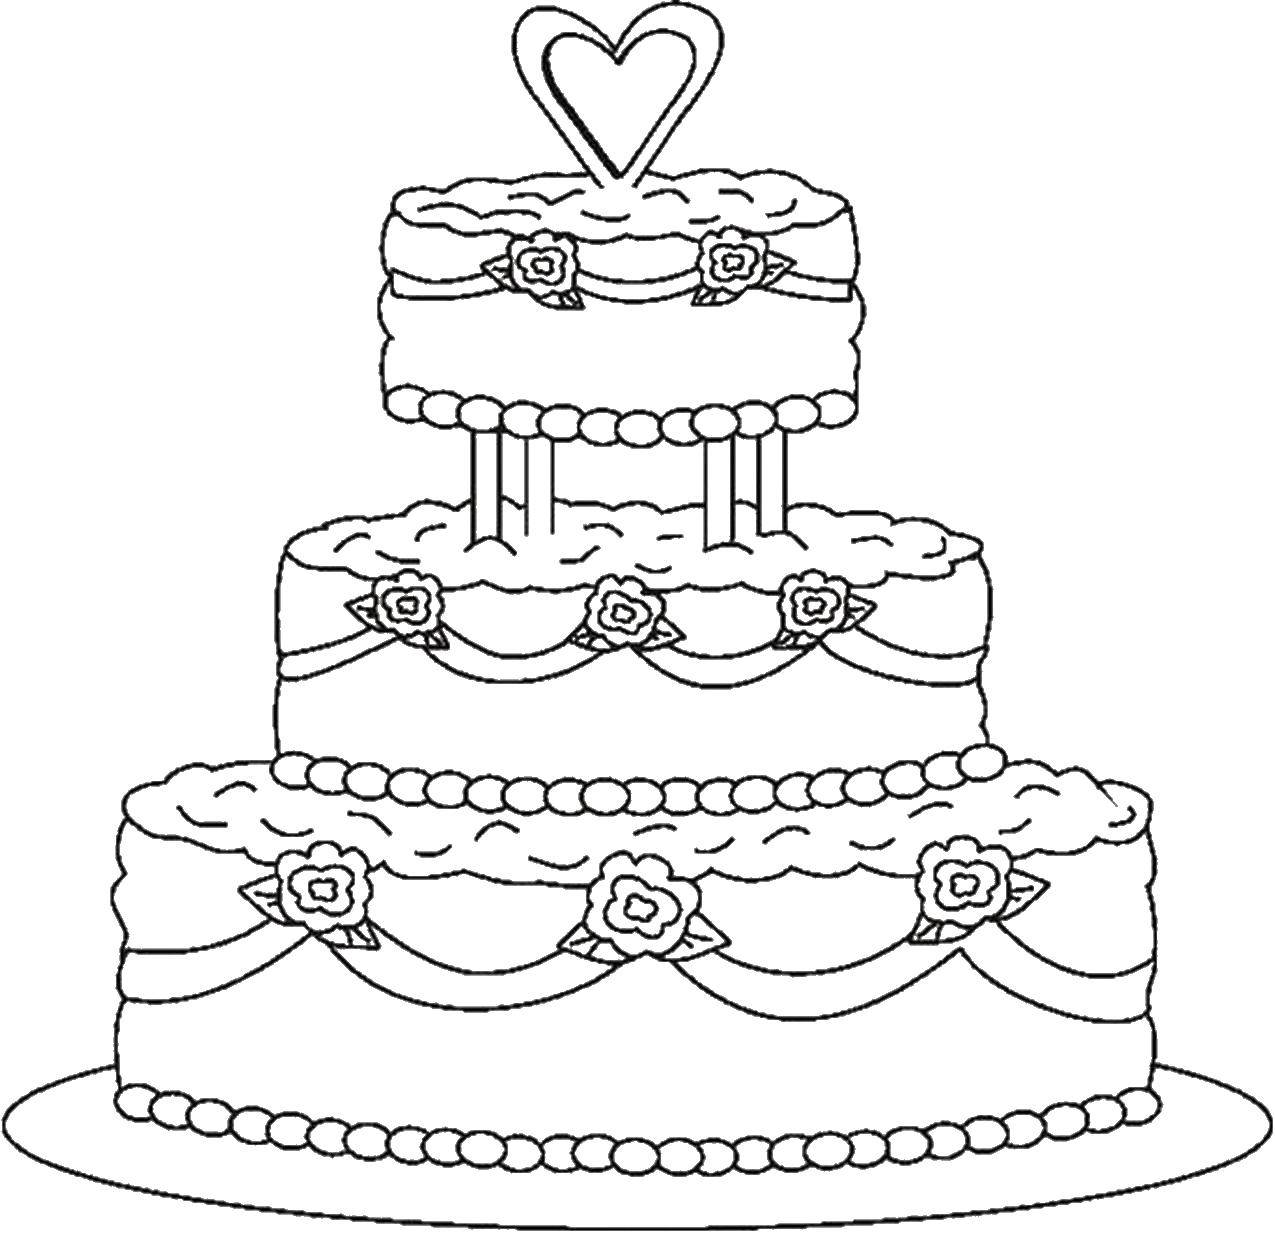 Название: Раскраска Свадебный торт с розами. Категория: Еда. Теги: торт, свадьба.